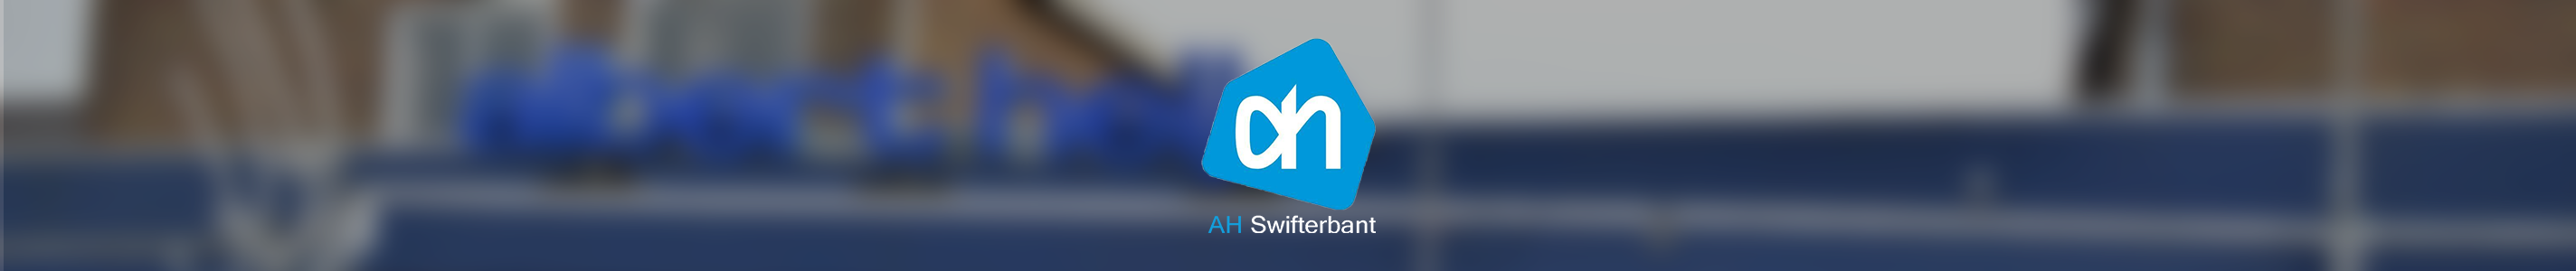 Albert Heijn swifterbant logo